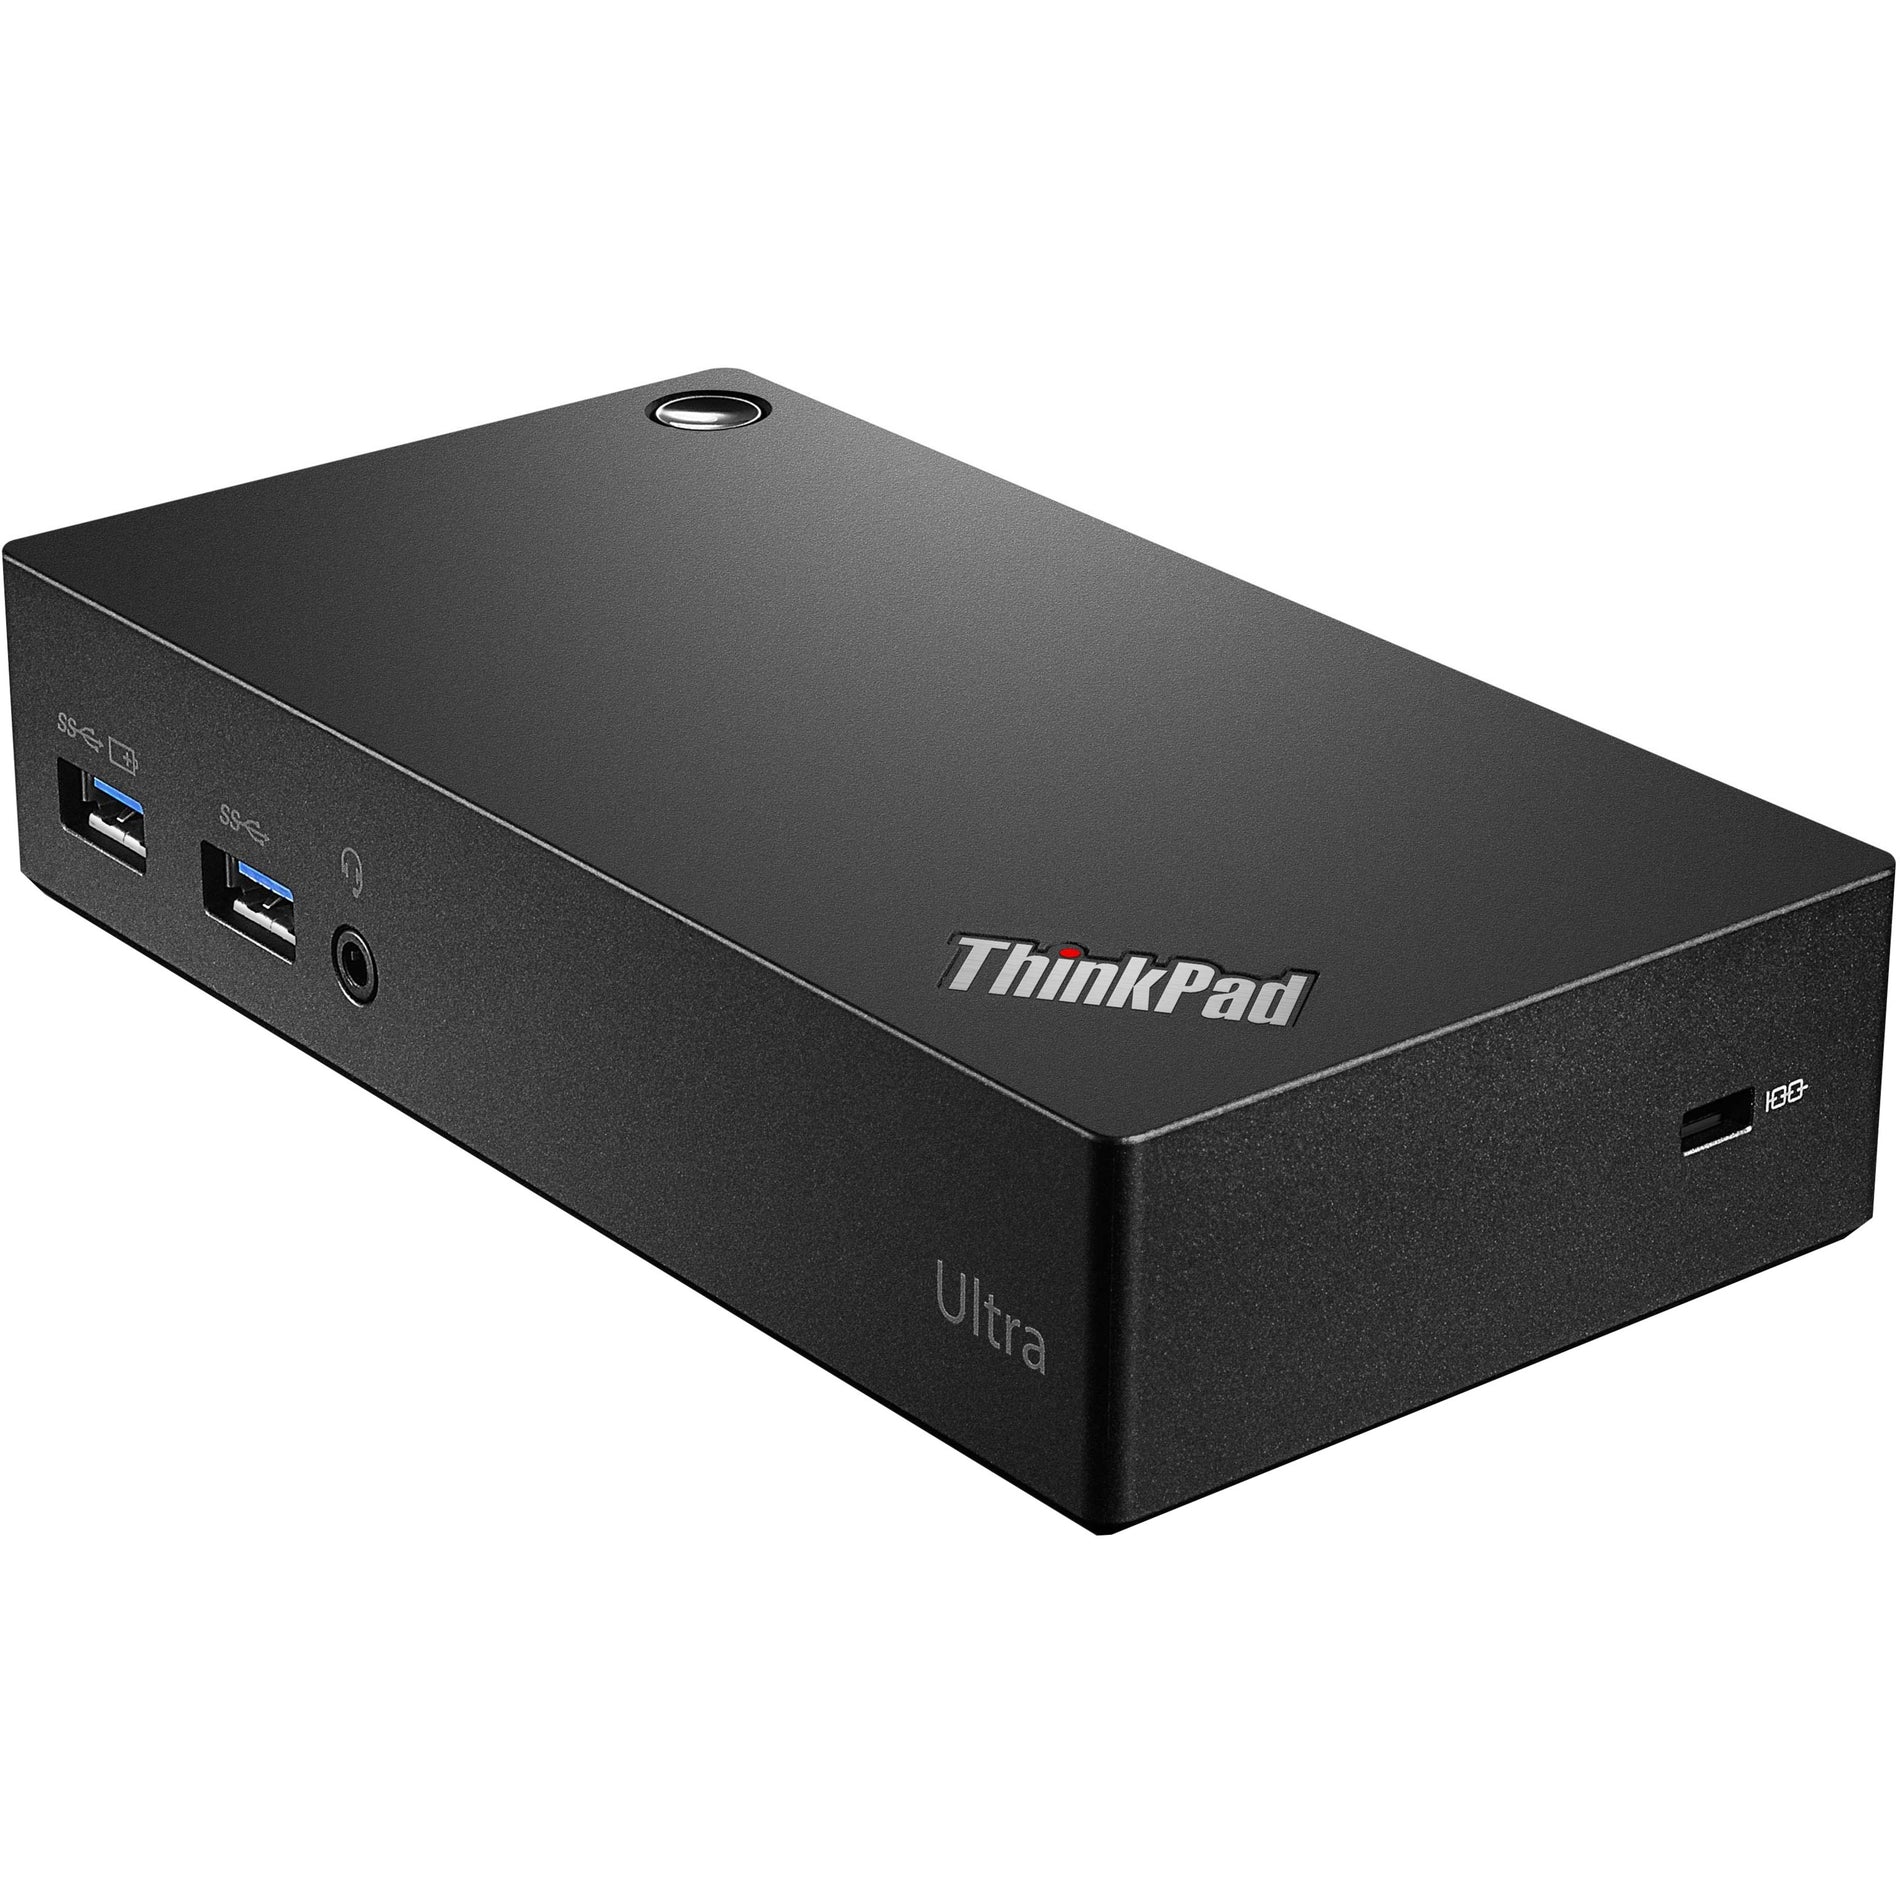 Lenovo 40A80045US ThinkPad USB 3.0 Ultra Dock, 6 USB Ports, HDMI, DisplayPort